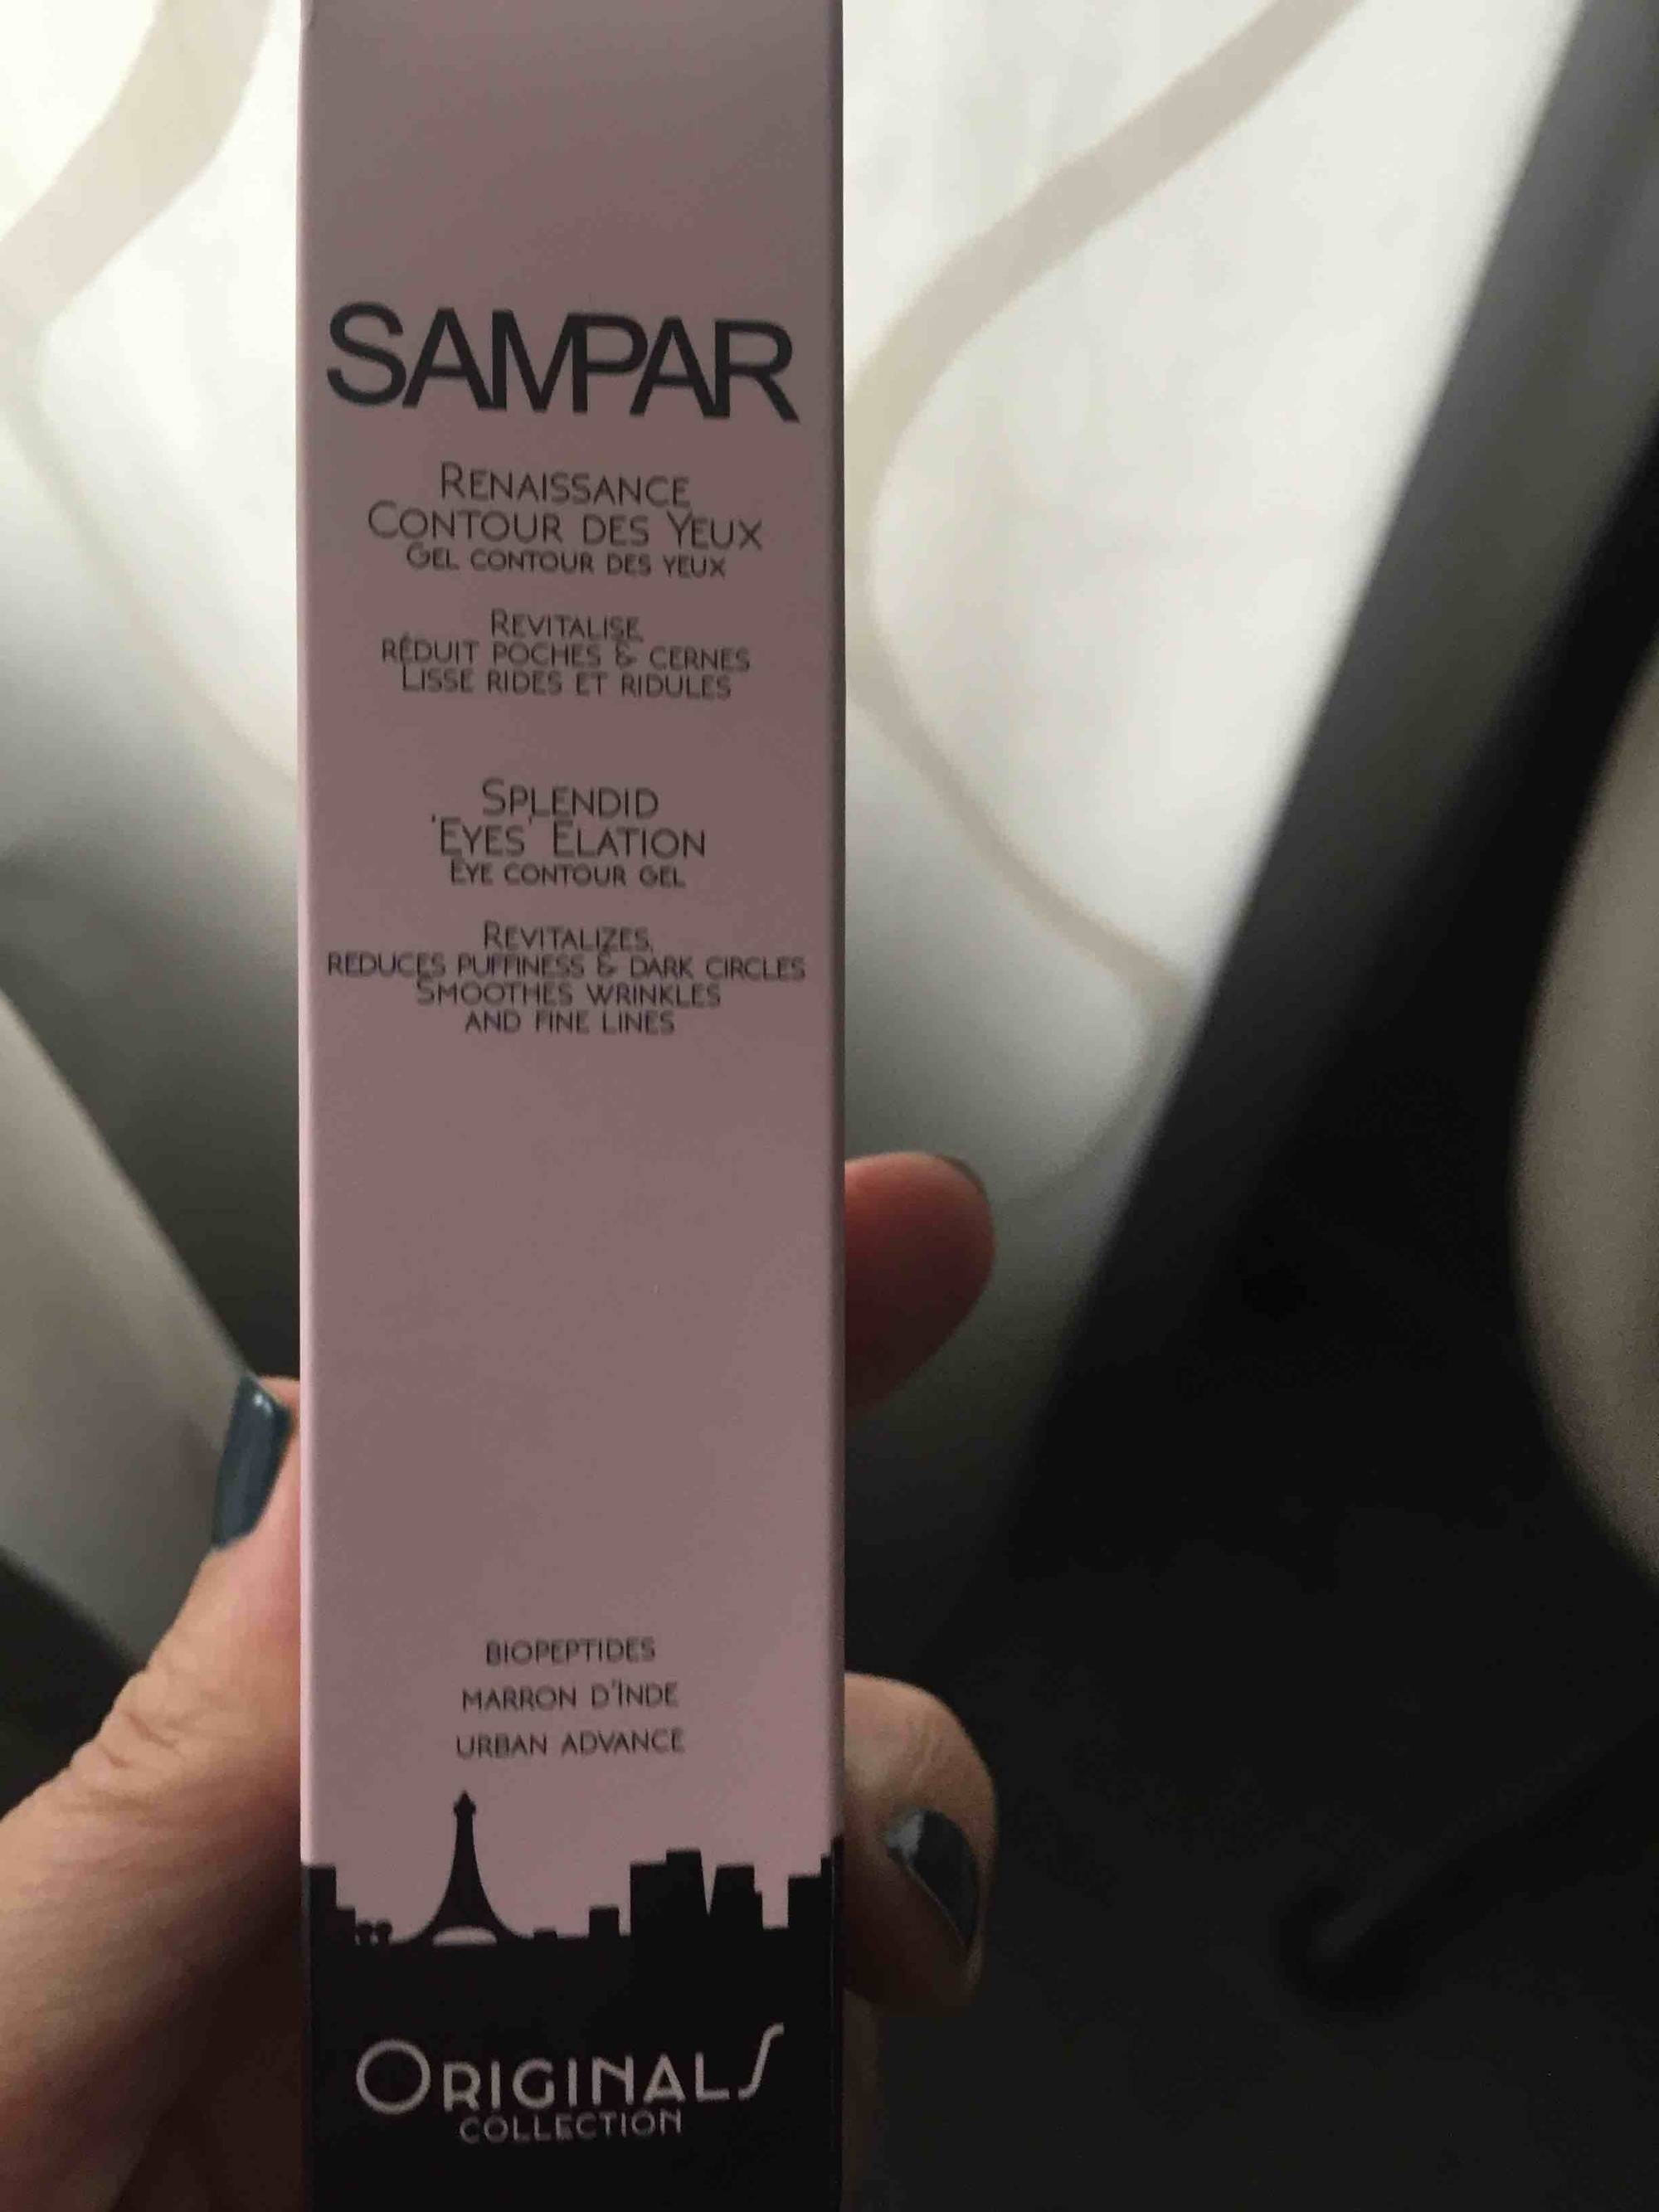 SAMPAR - Renaissance - Contour des yeux gel